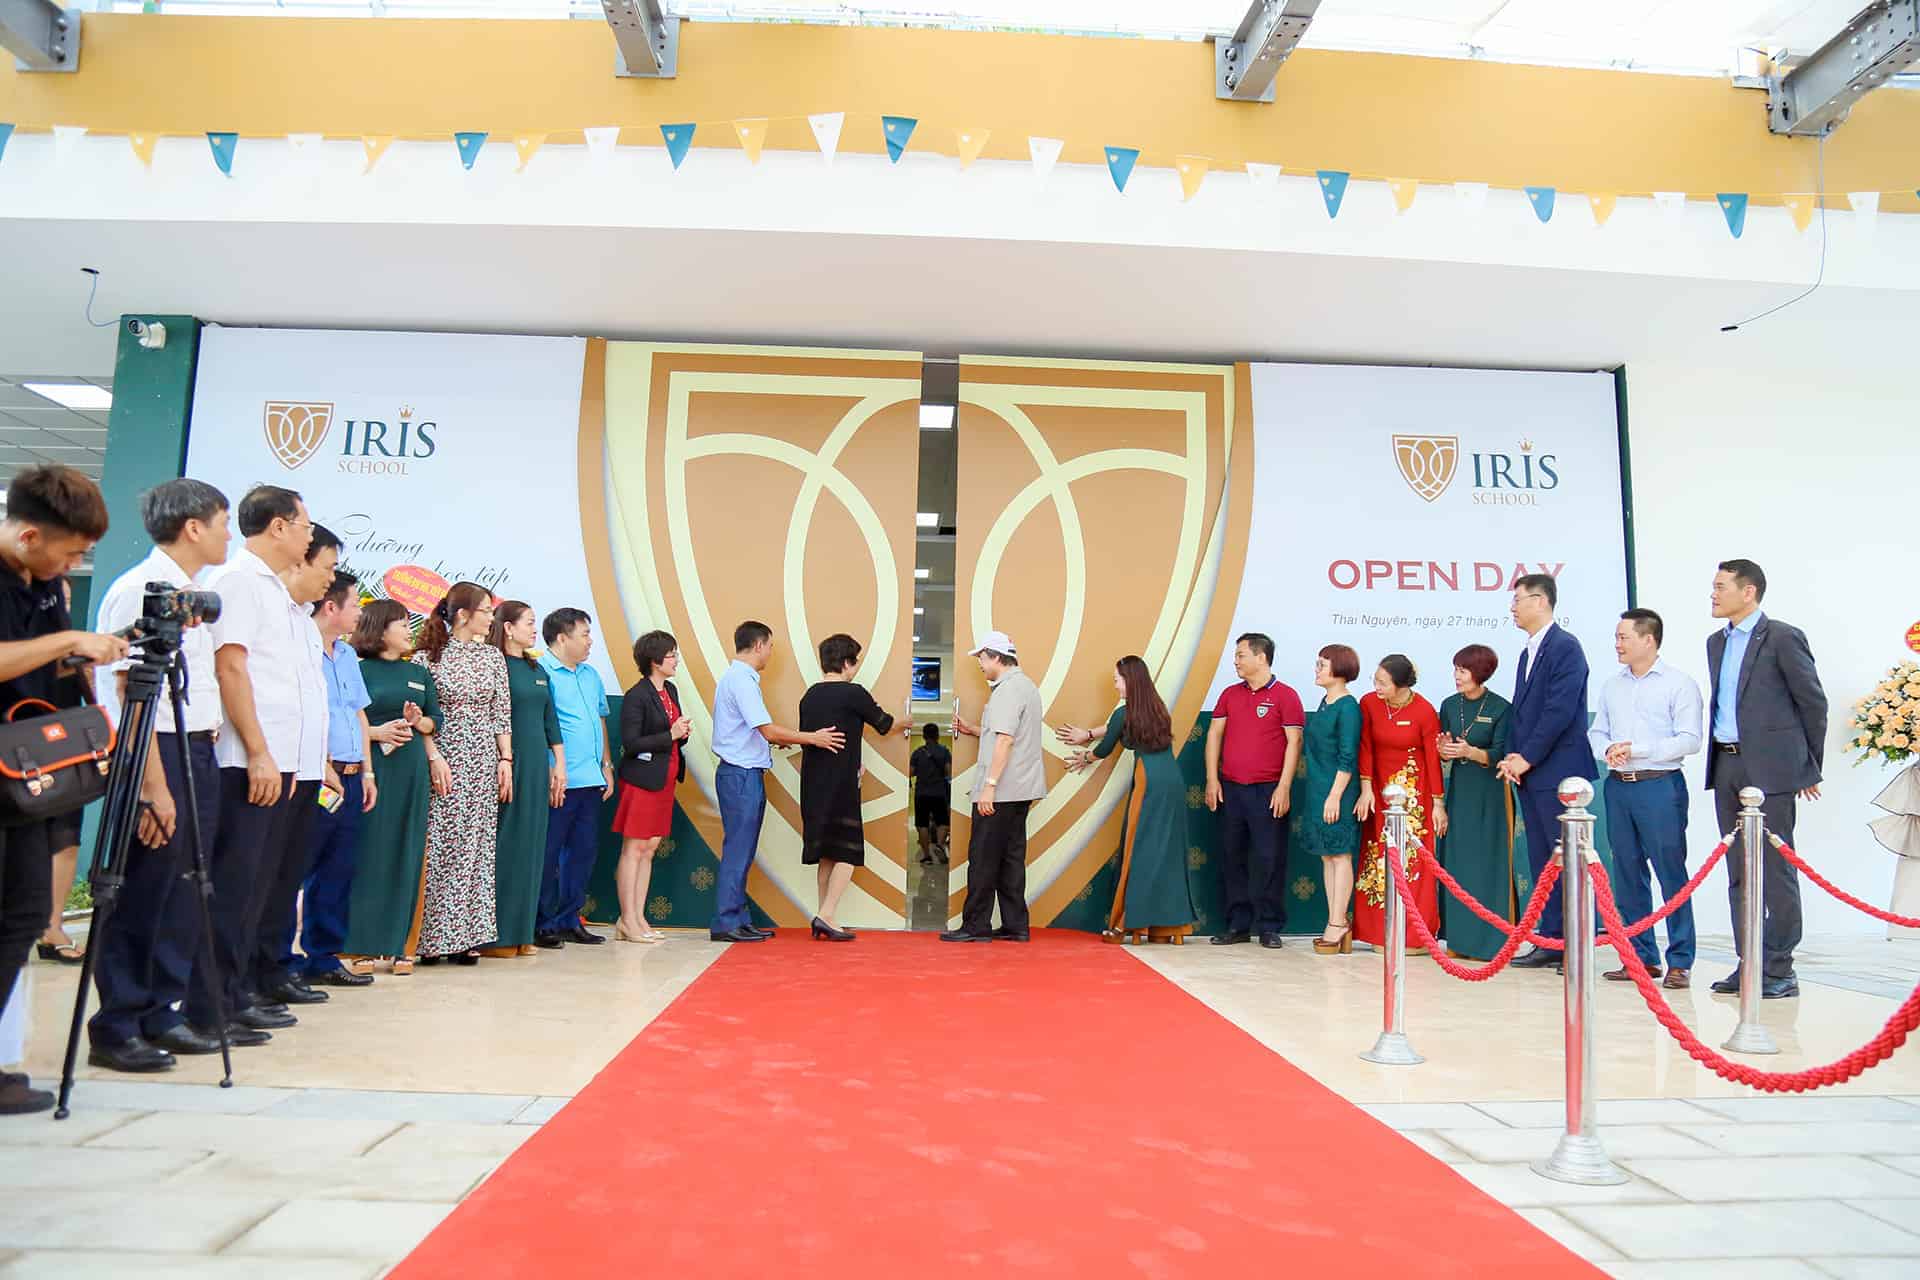 Cánh cổng trường mở ra đánh dấu thời khắc trường IRIS chính thức đi vào hoạt động